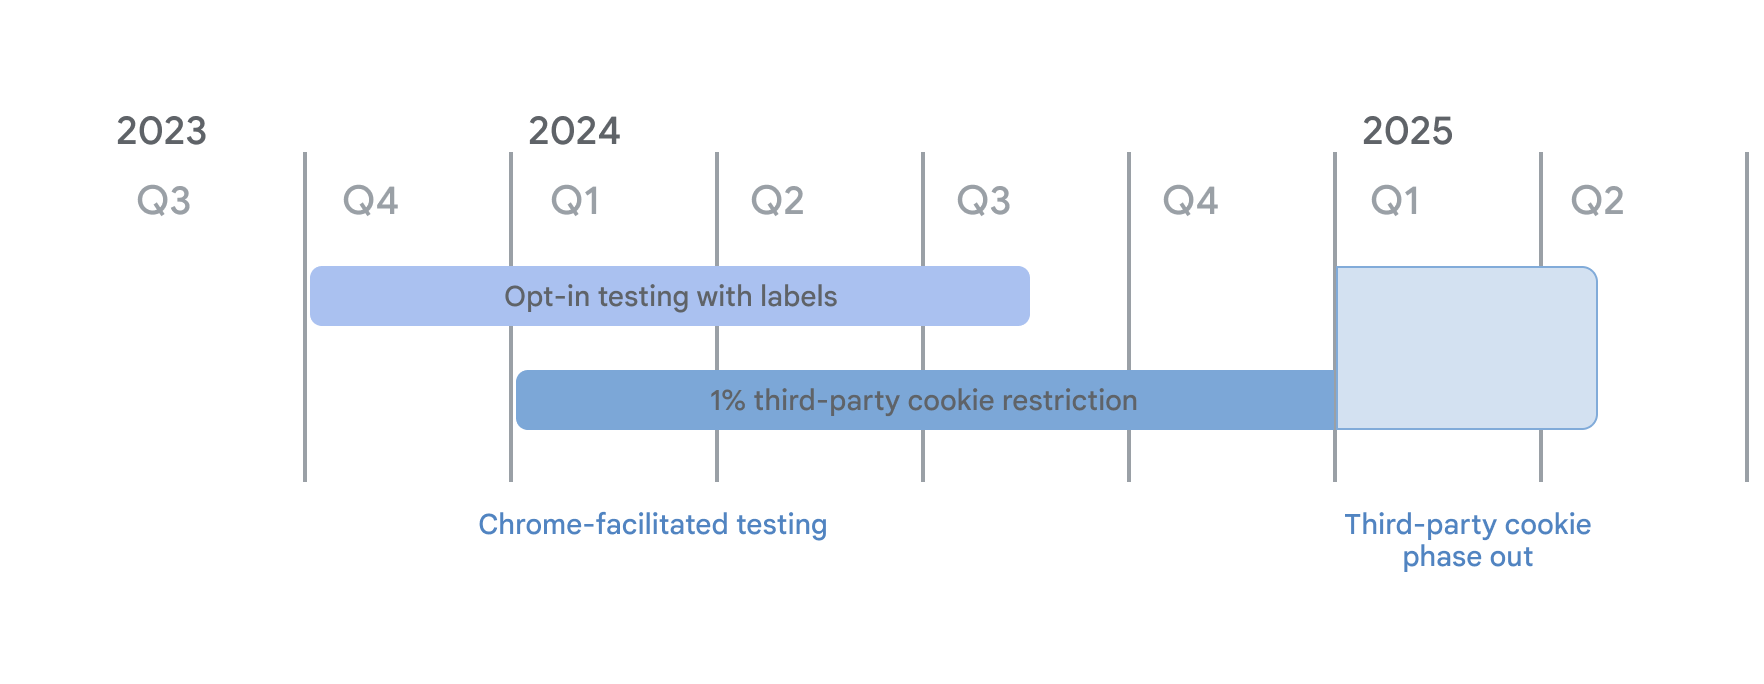 서드 파티 쿠키 지원 중단 타임라인 Chrome에서 진행하는 테스트의 일환으로 라벨 모드를 사용한 수신 동의 테스트는 2023년 4분기에 시작되었으며, 2024년 1월 4일부터 서드 파티 쿠키 1% 제한이 적용되었습니다. 서드 파티 쿠키에 대한 단계적 폐지가 시작되는 2025년 1분기까지 두 가지 모두 계속 적용됩니다.